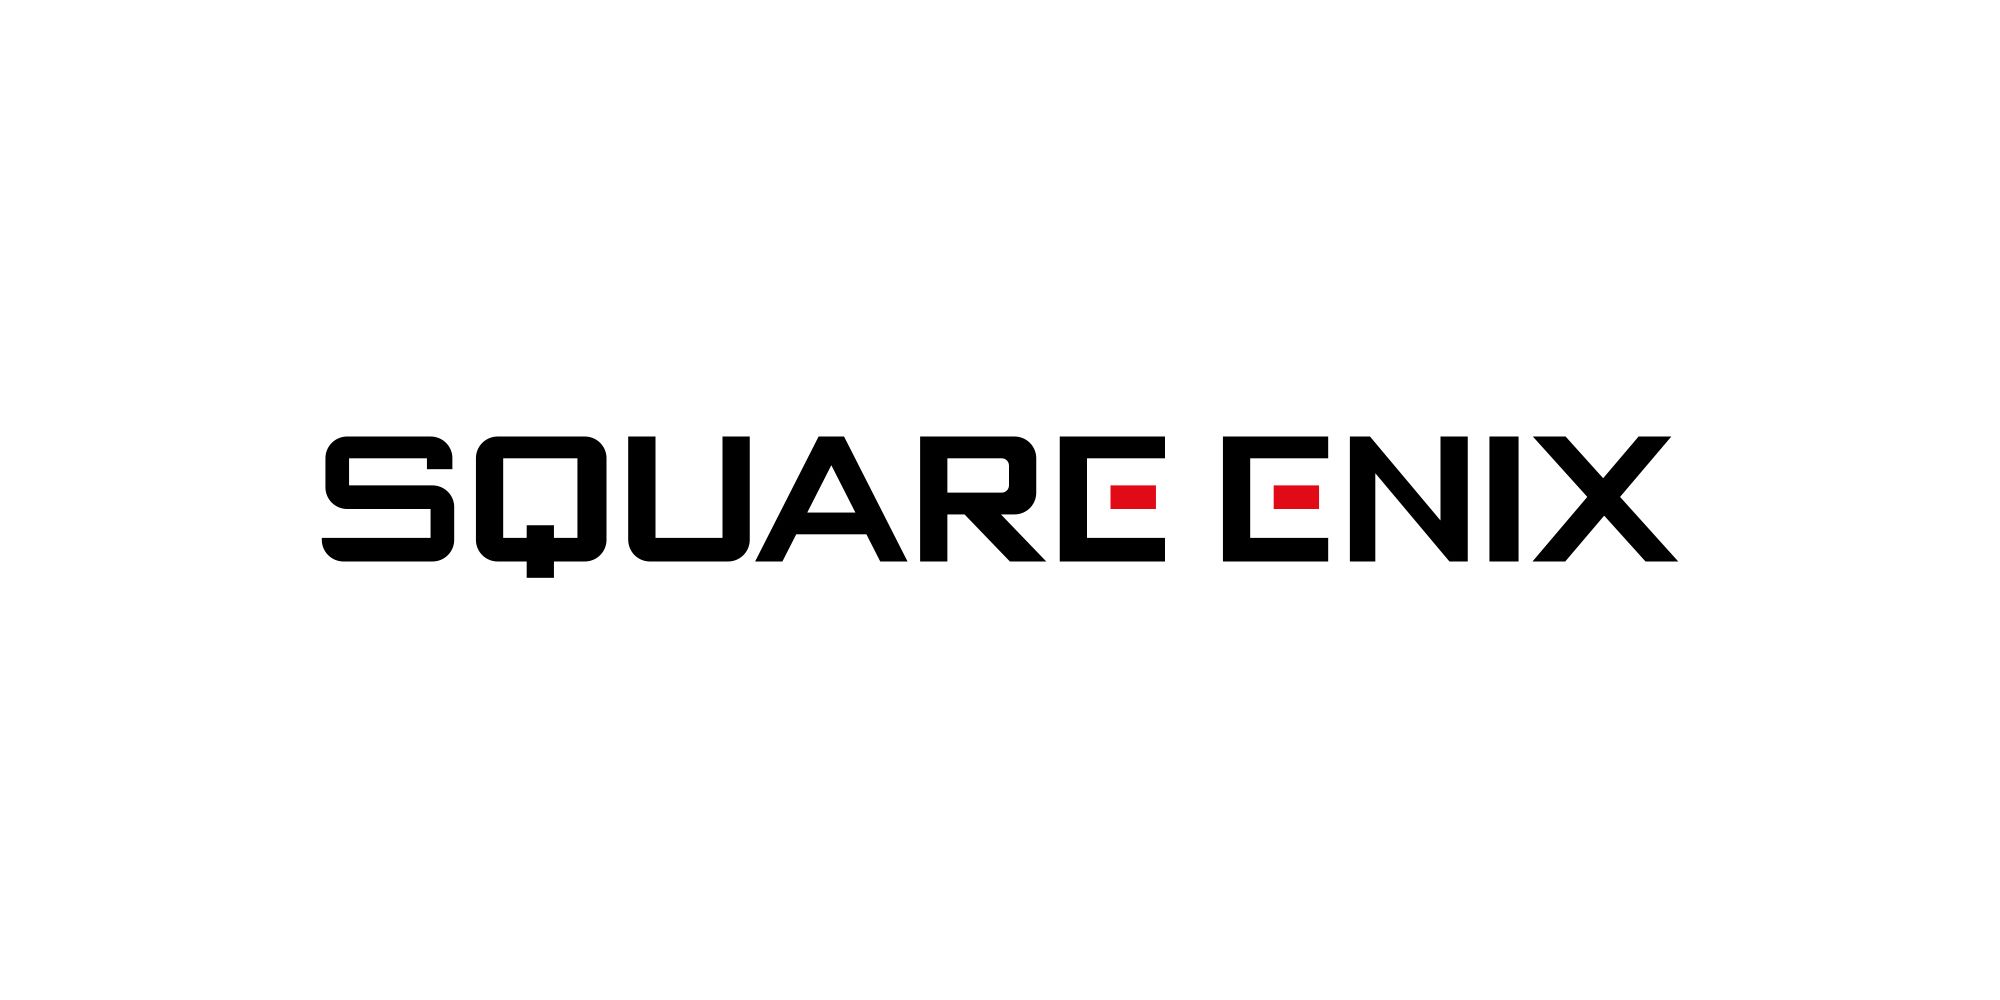 Square Enix logo on white